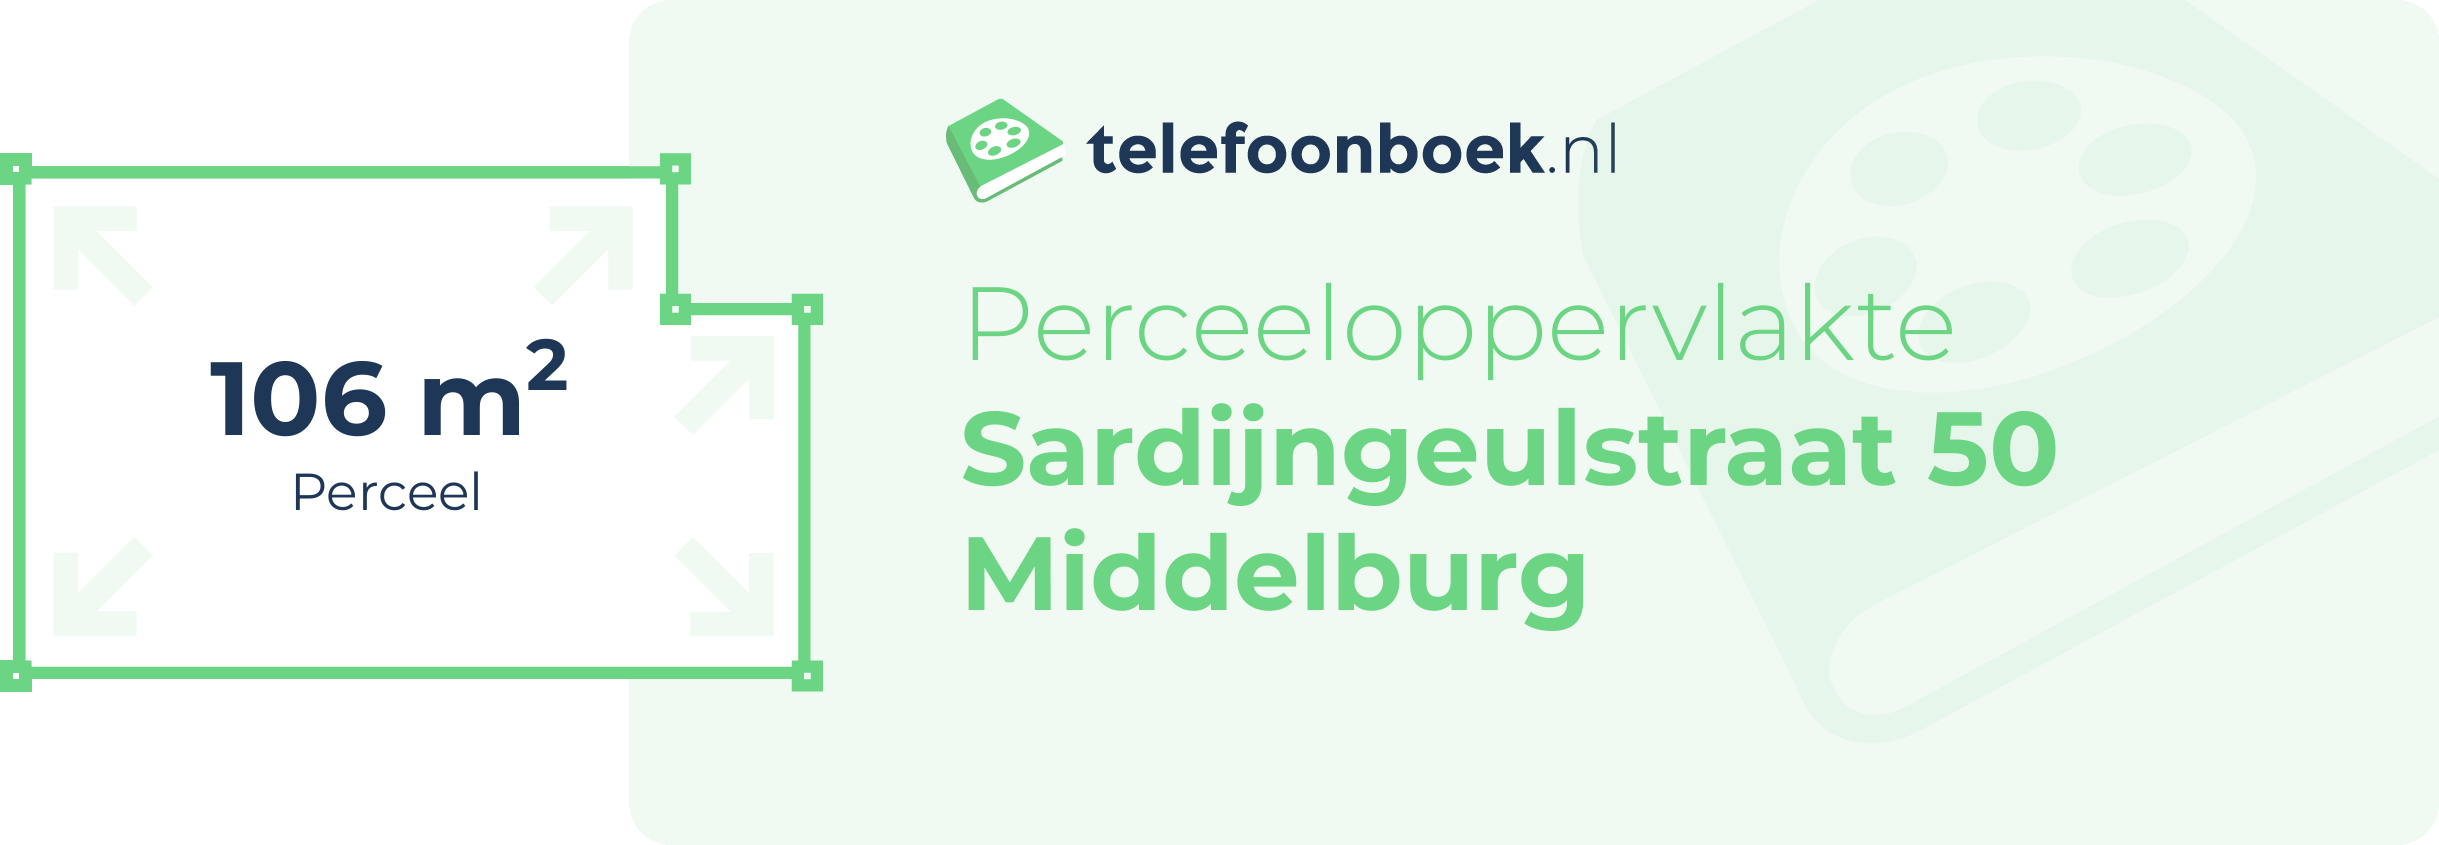 Perceeloppervlakte Sardijngeulstraat 50 Middelburg